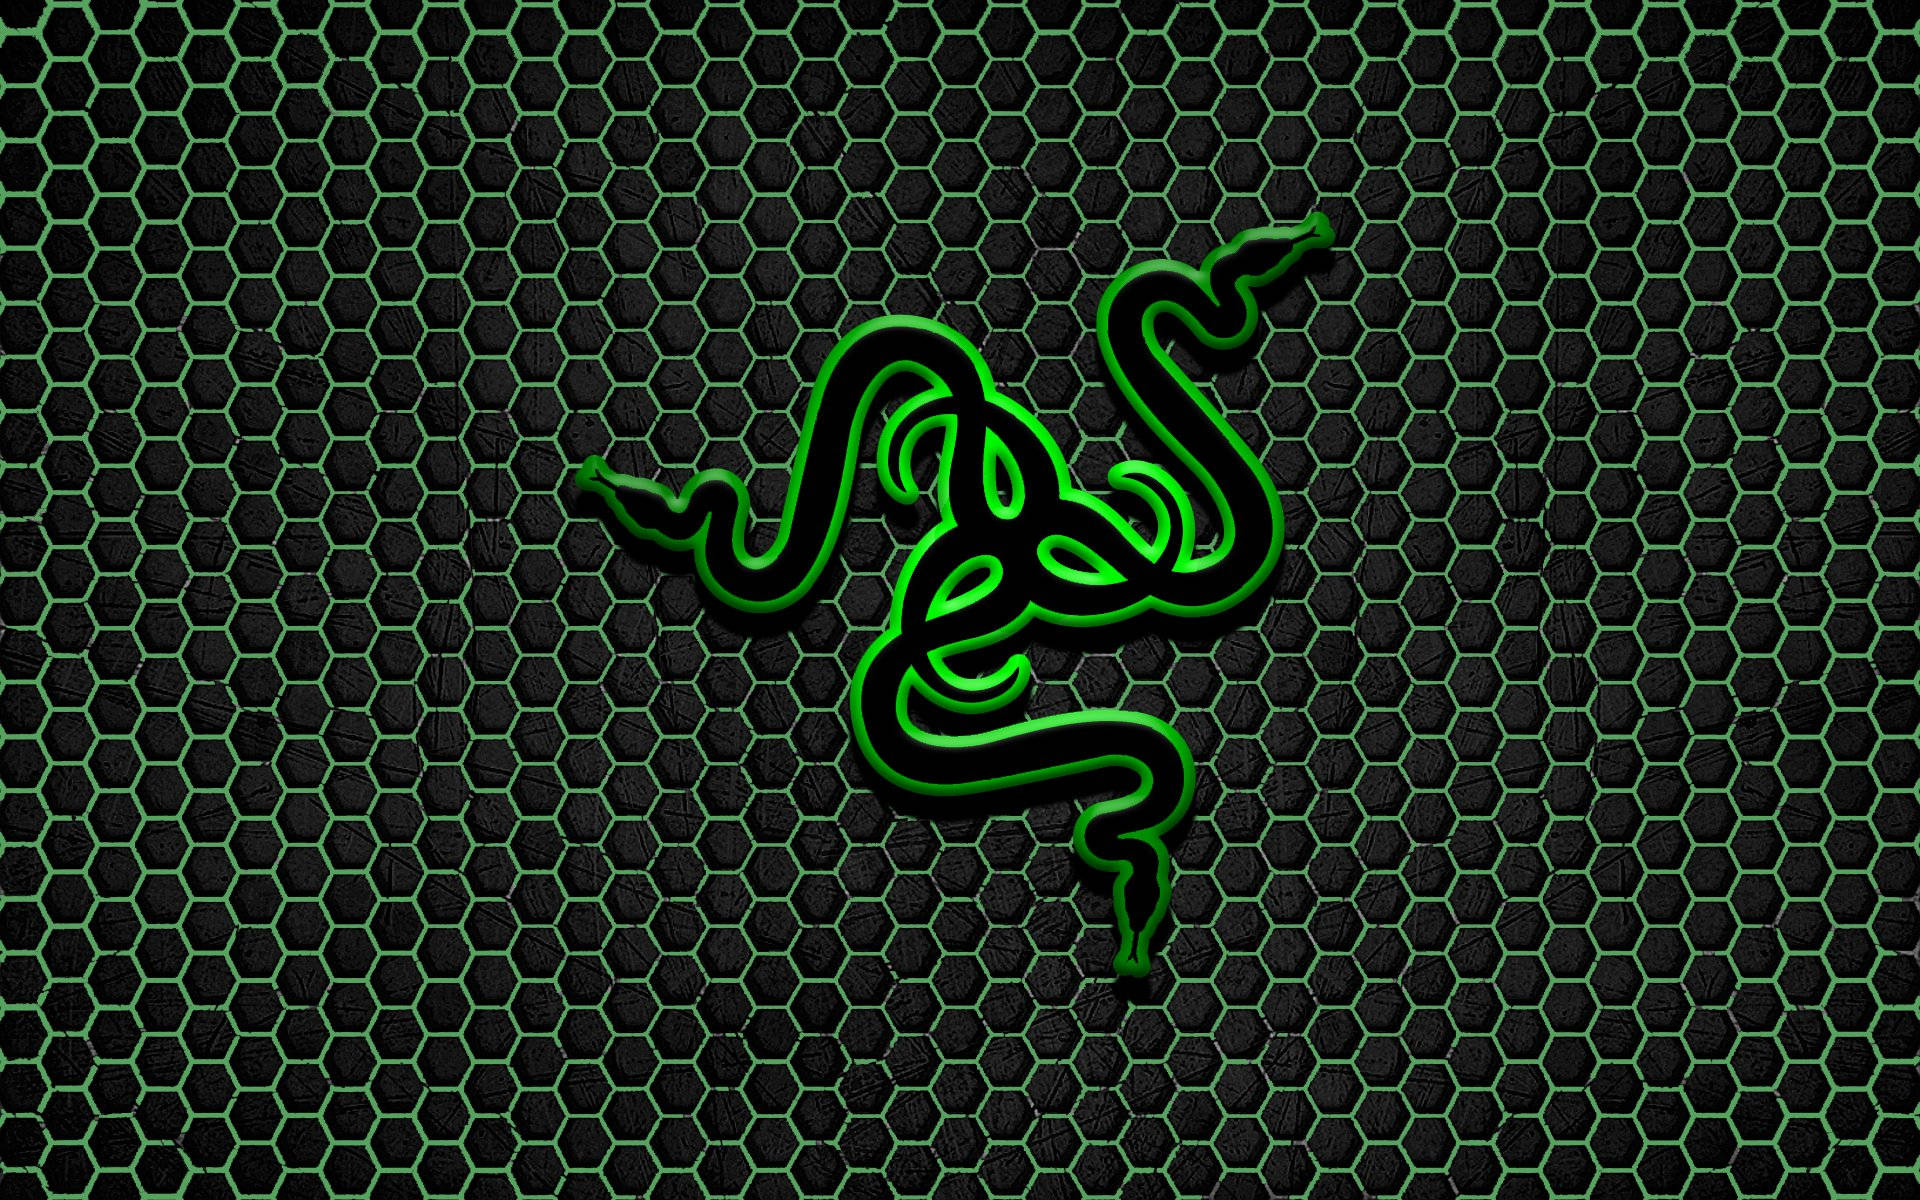 Razer Pc Logo With Hexagonal Background Background